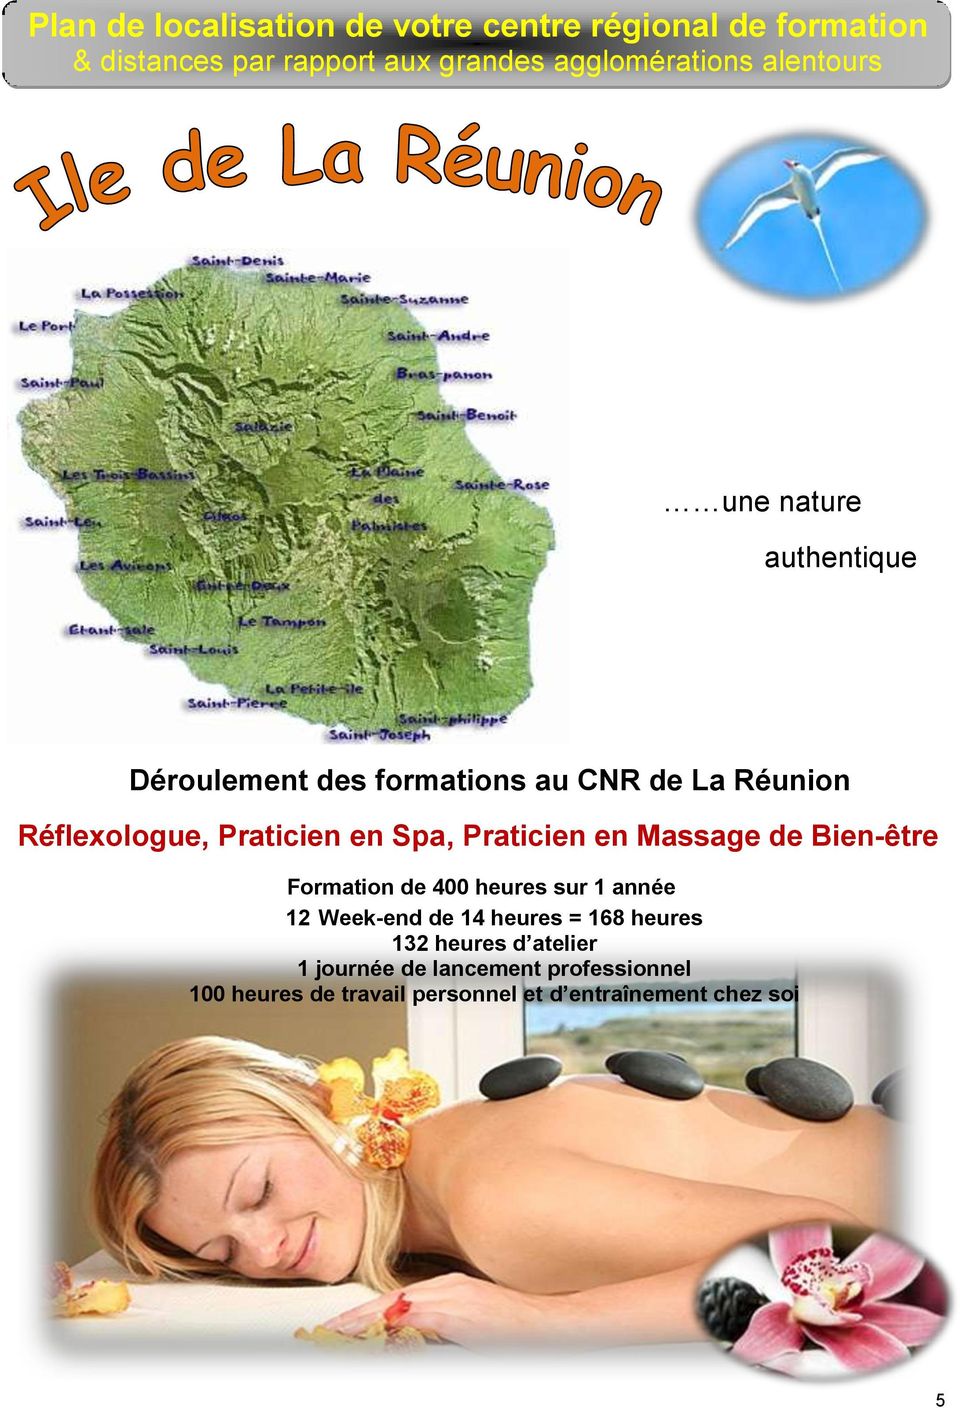 Praticien en Massage de Bien-être Formation de 400 heures sur 1 année 12 Week-end de 14 heures = 168 heures 132